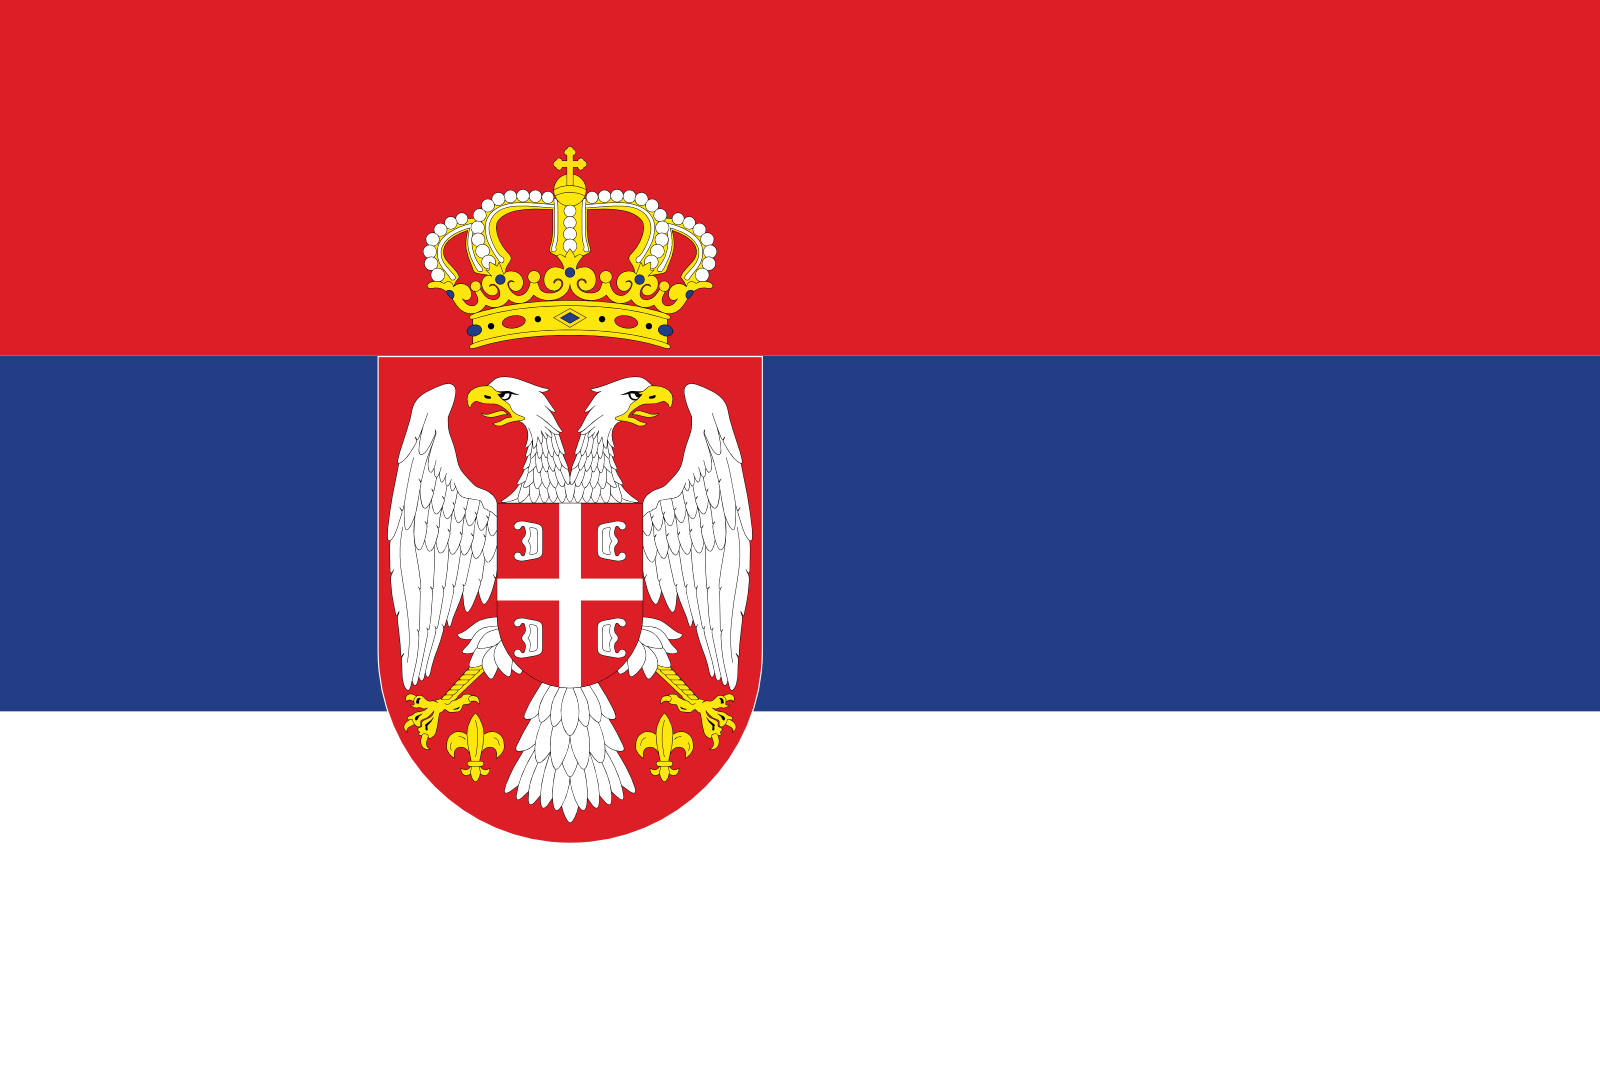 Serbiens Flagge